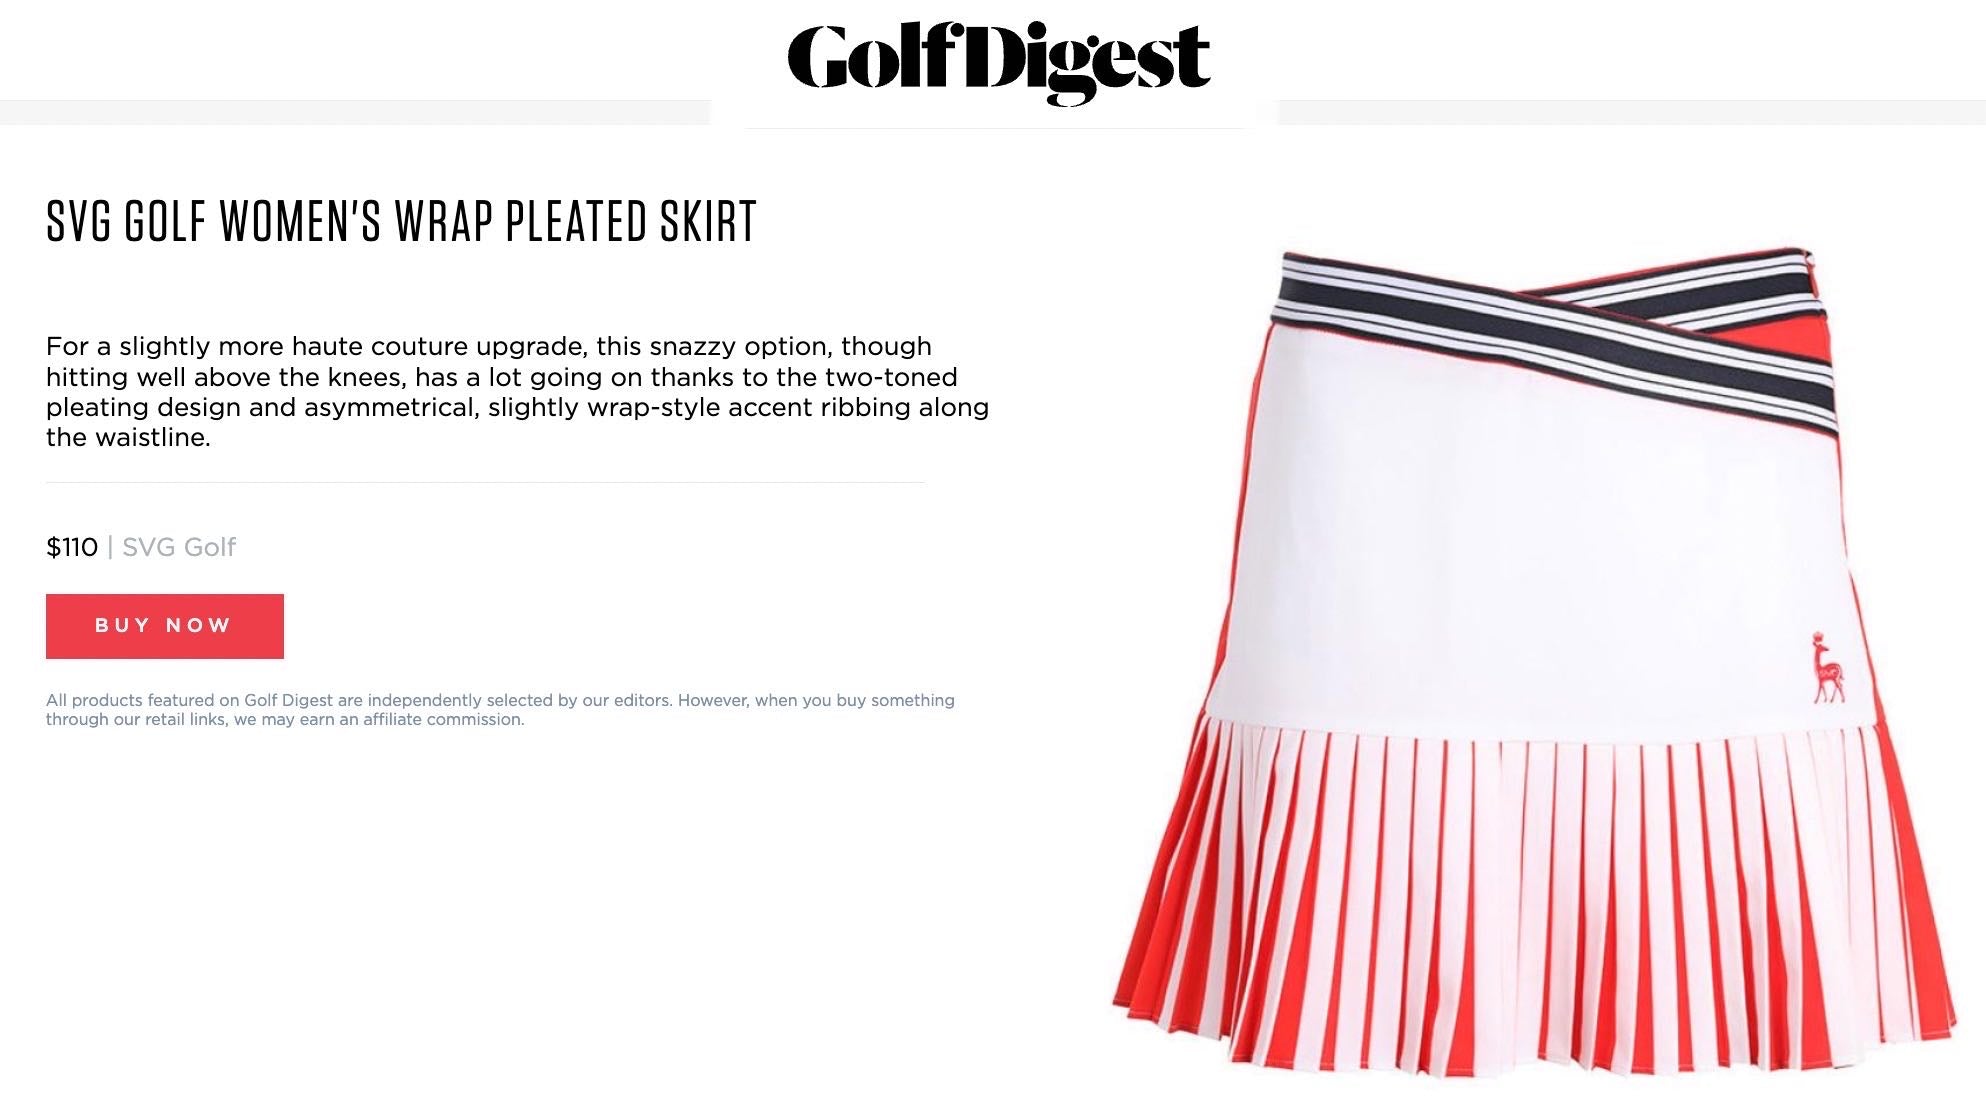 svg golf women wrap pleated skirt as seen on Golf Digest